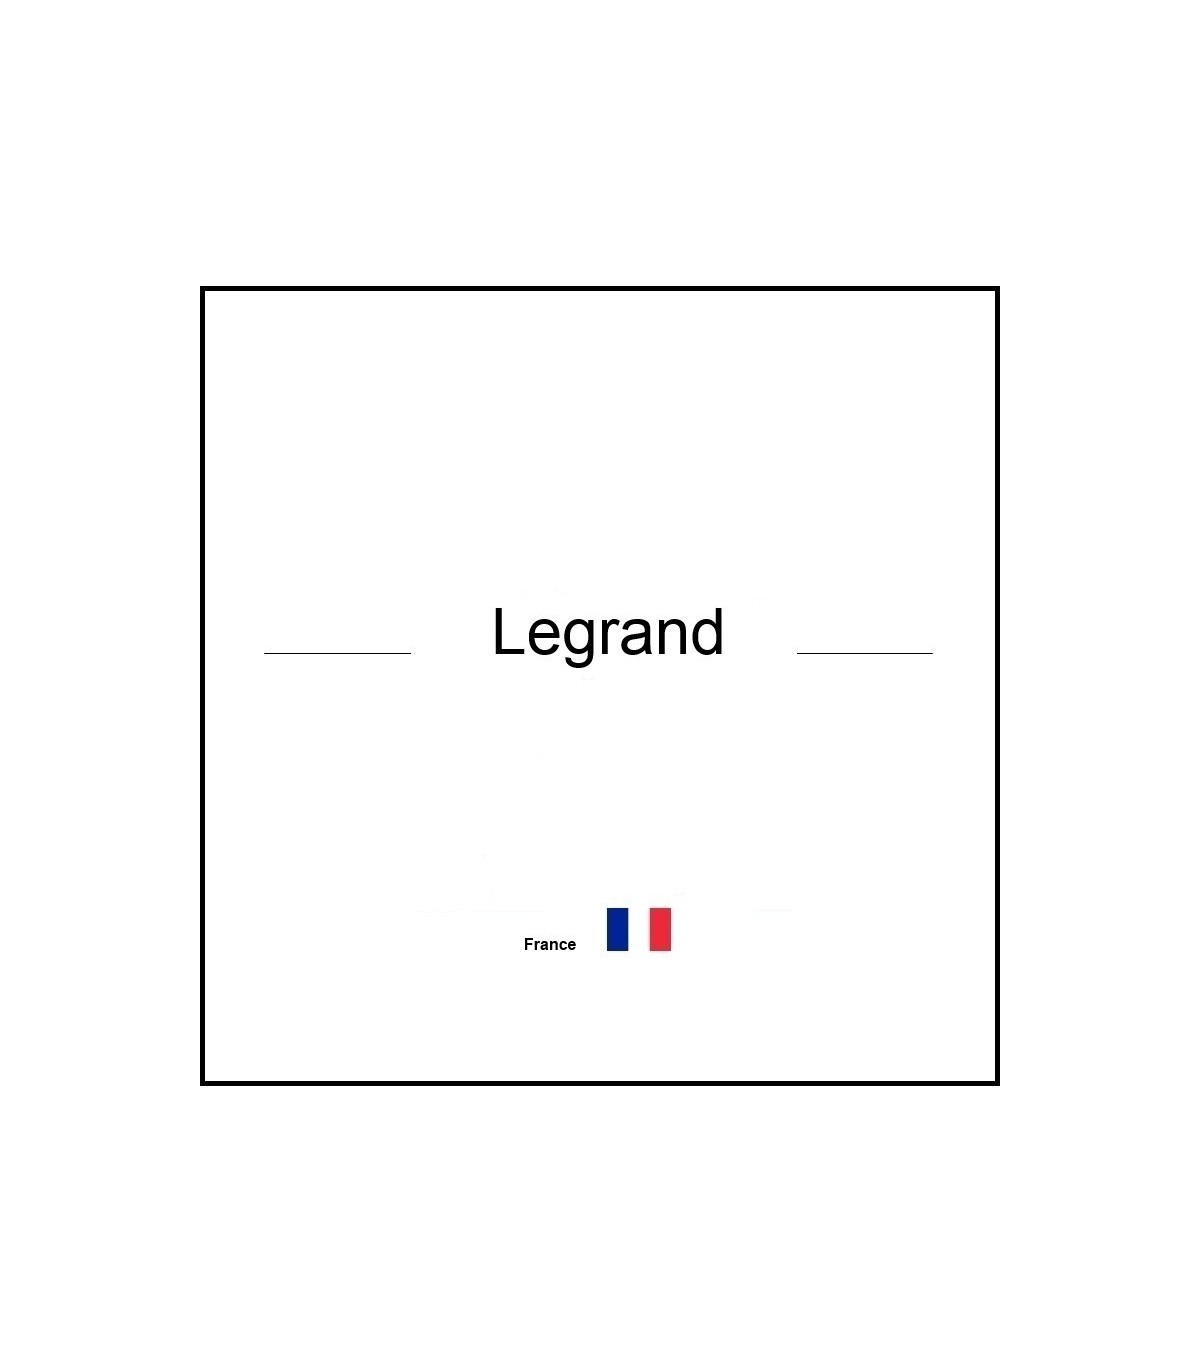 Télérupteur modulaire 16 A Legrand - Unipolaire silencieux 230 V - Legrand